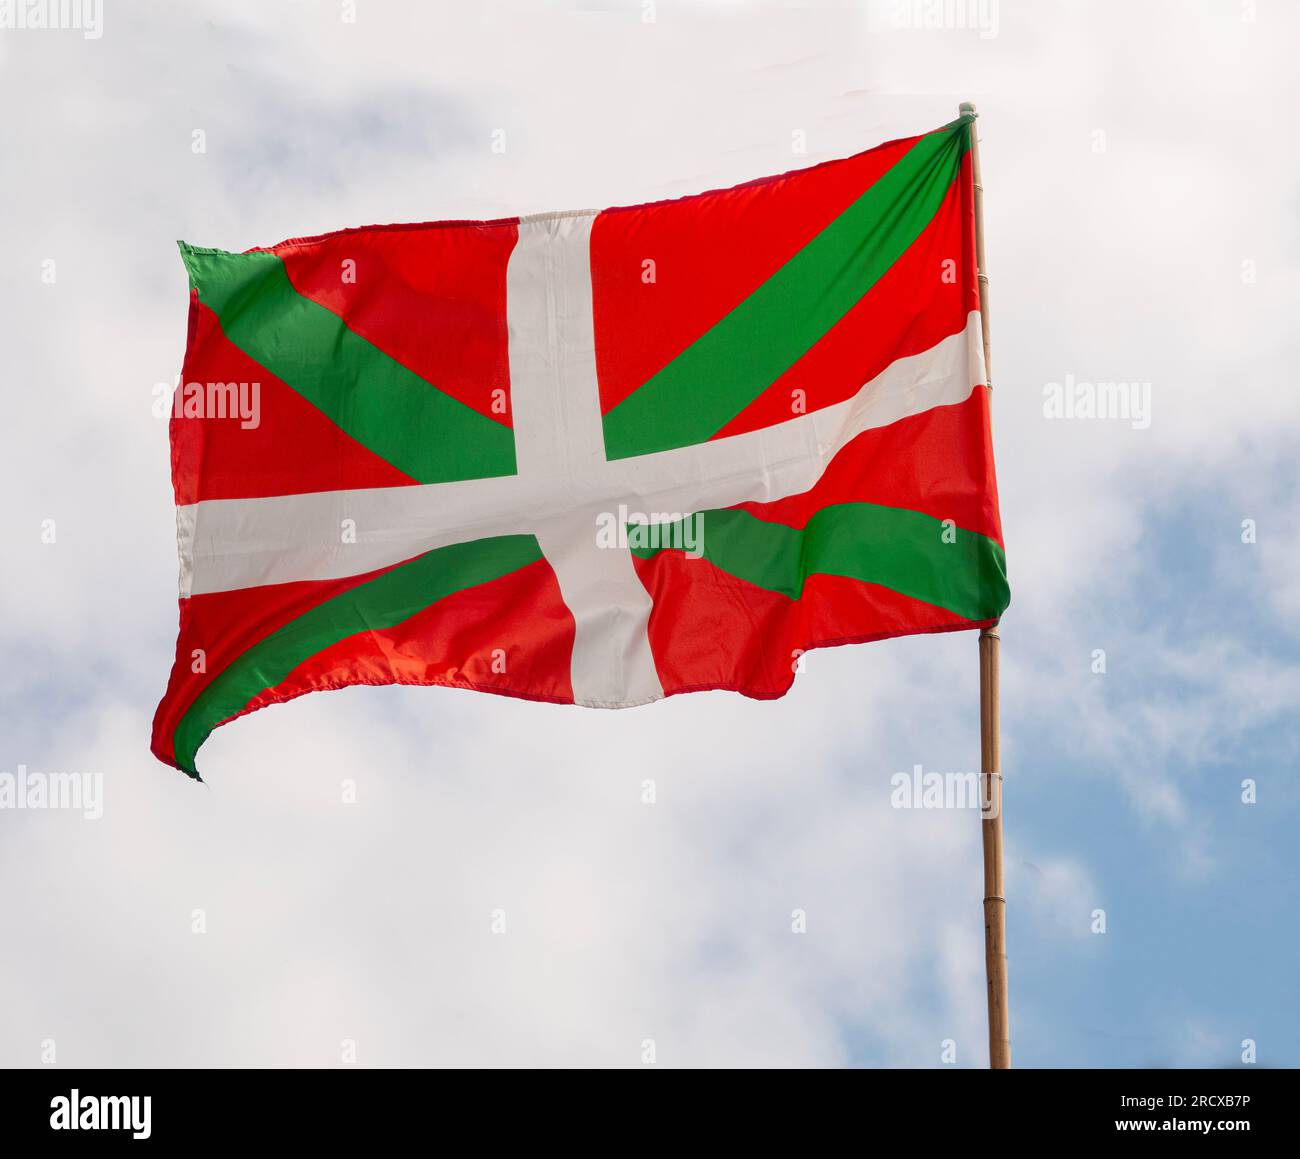 Pays drapeau de la région basque. Le drapeau du pays Basque agitant sur un mât. Communauté autonome dans le nord de l'Espagne. Banque D'Images